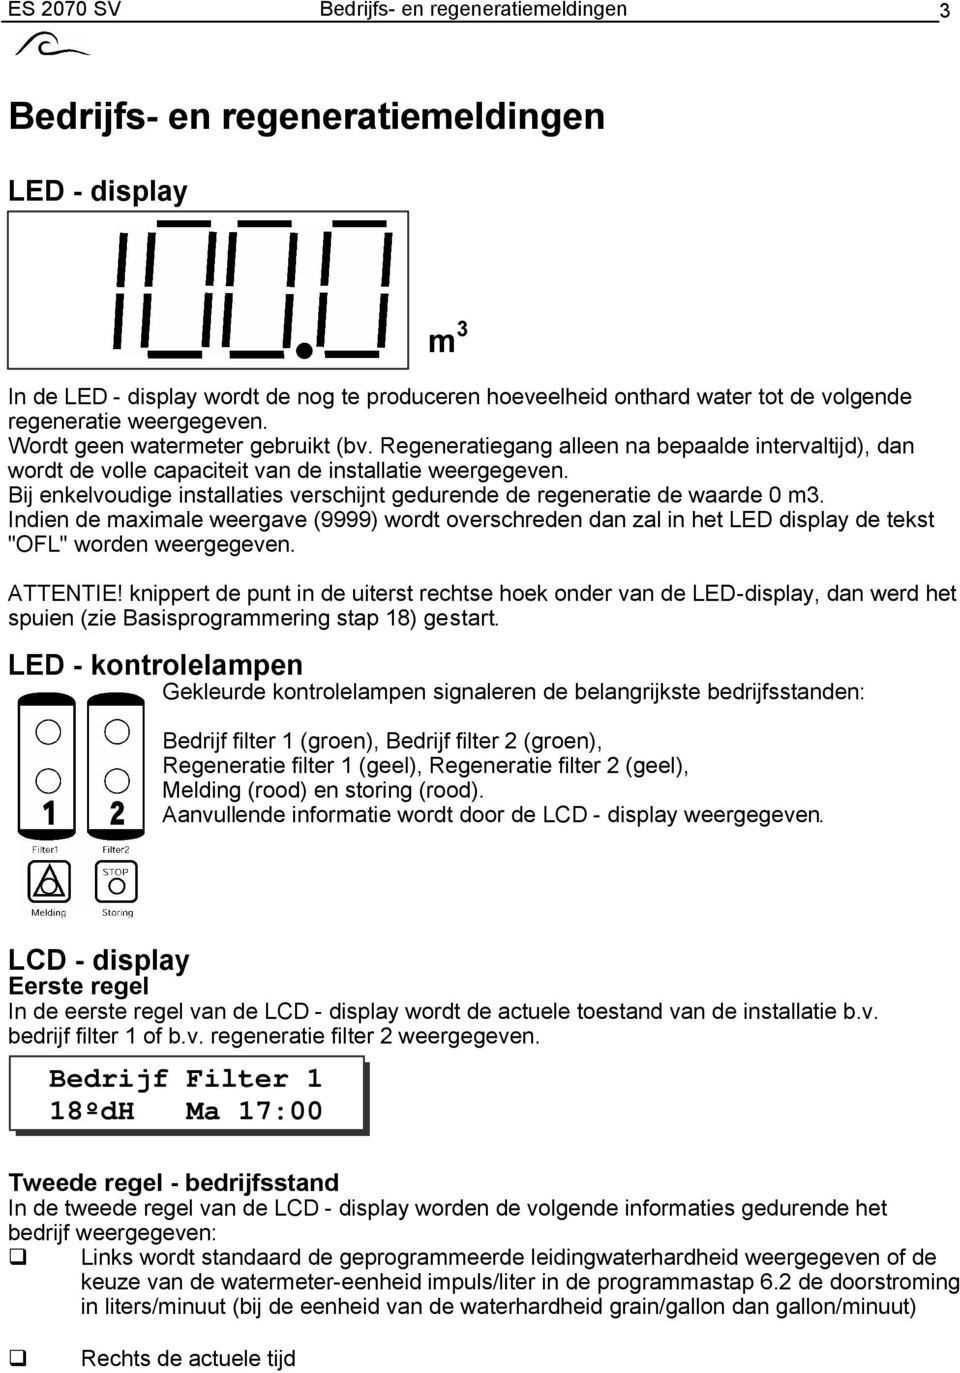 Bij enkelvoudige installaties verschijnt gedurende de regeneratie de waarde 0 m3. Indien de maximale weergave (9999) wordt overschreden dan zal in het LED display de tekst "OFL" worden weergegeven.